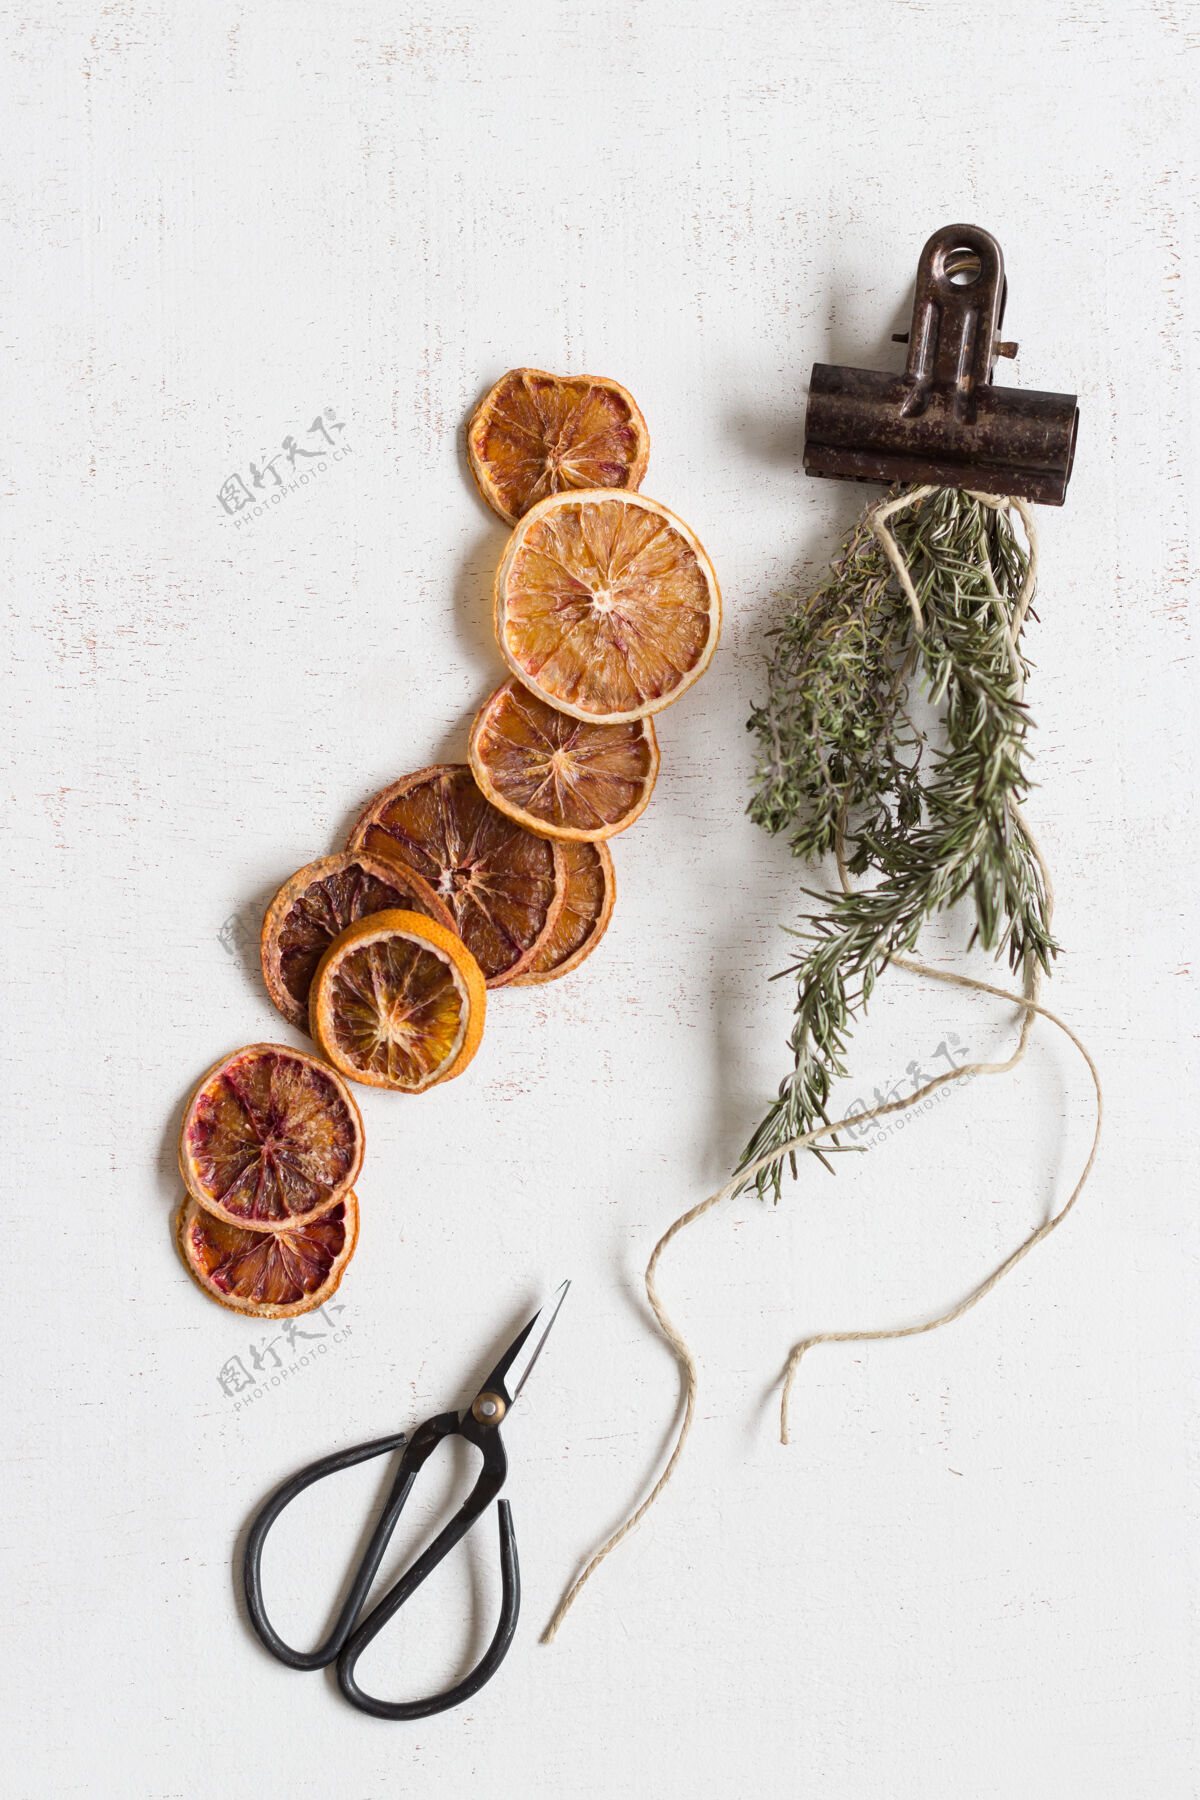 切片干橘子片和香料古董夹子和剪刀顶视图生锈橙色